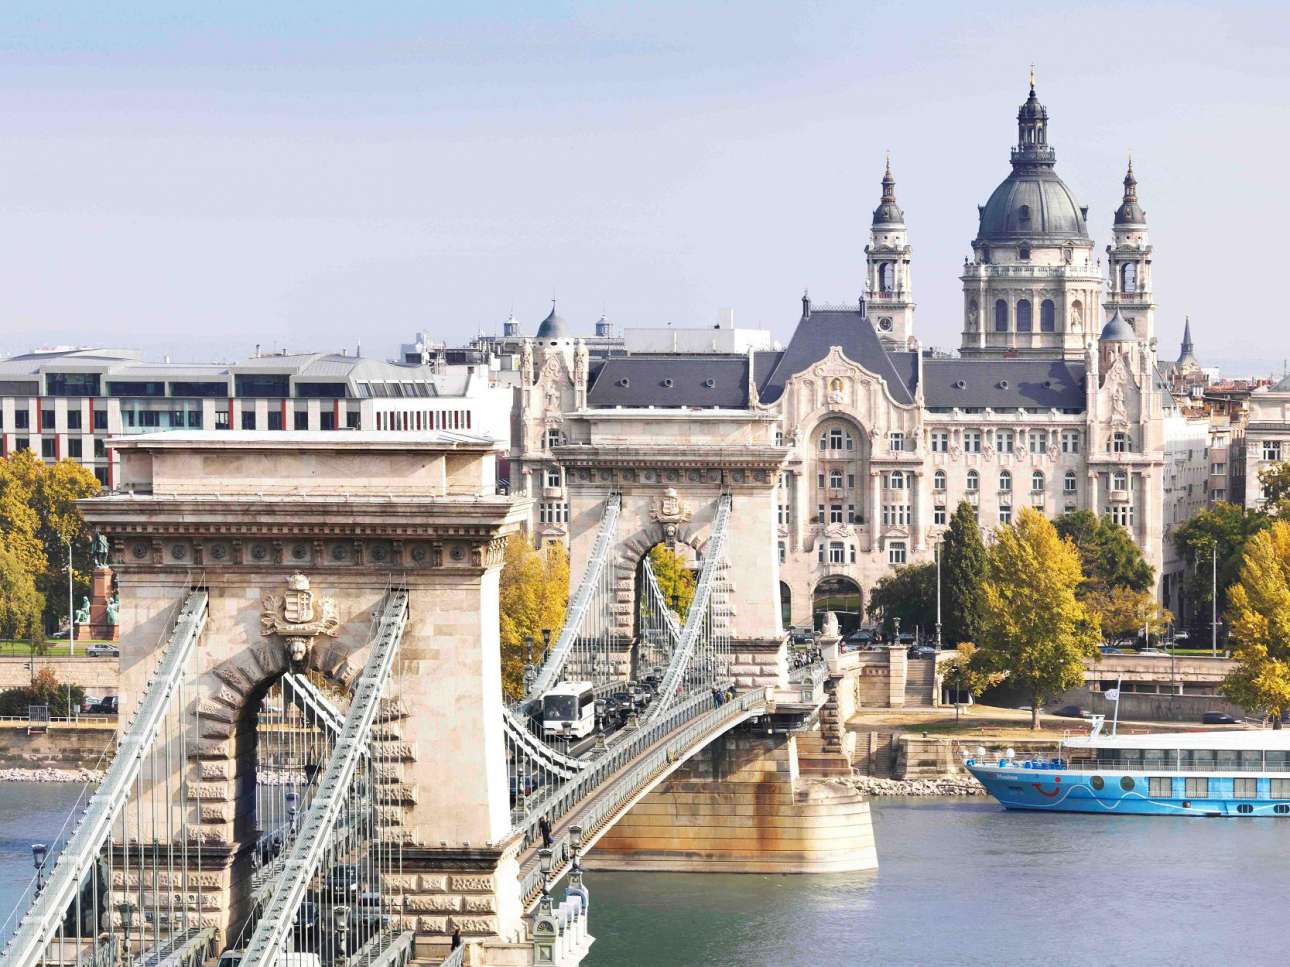 Θυμίζοντας έντονα το ξενοδοχείο «Grand Budapest Hotel» από τη ταινία του Γουές Αντερσον, το μαγευτικό «Gresham Palace» που βρίσκεται στις όχθες του ποταμού Δούναβη στη Βουδαπέστη, αποτελεί ένα θαυμάσιο παράδειγμα Αρτ Νουβό αρχιτεκτονικής